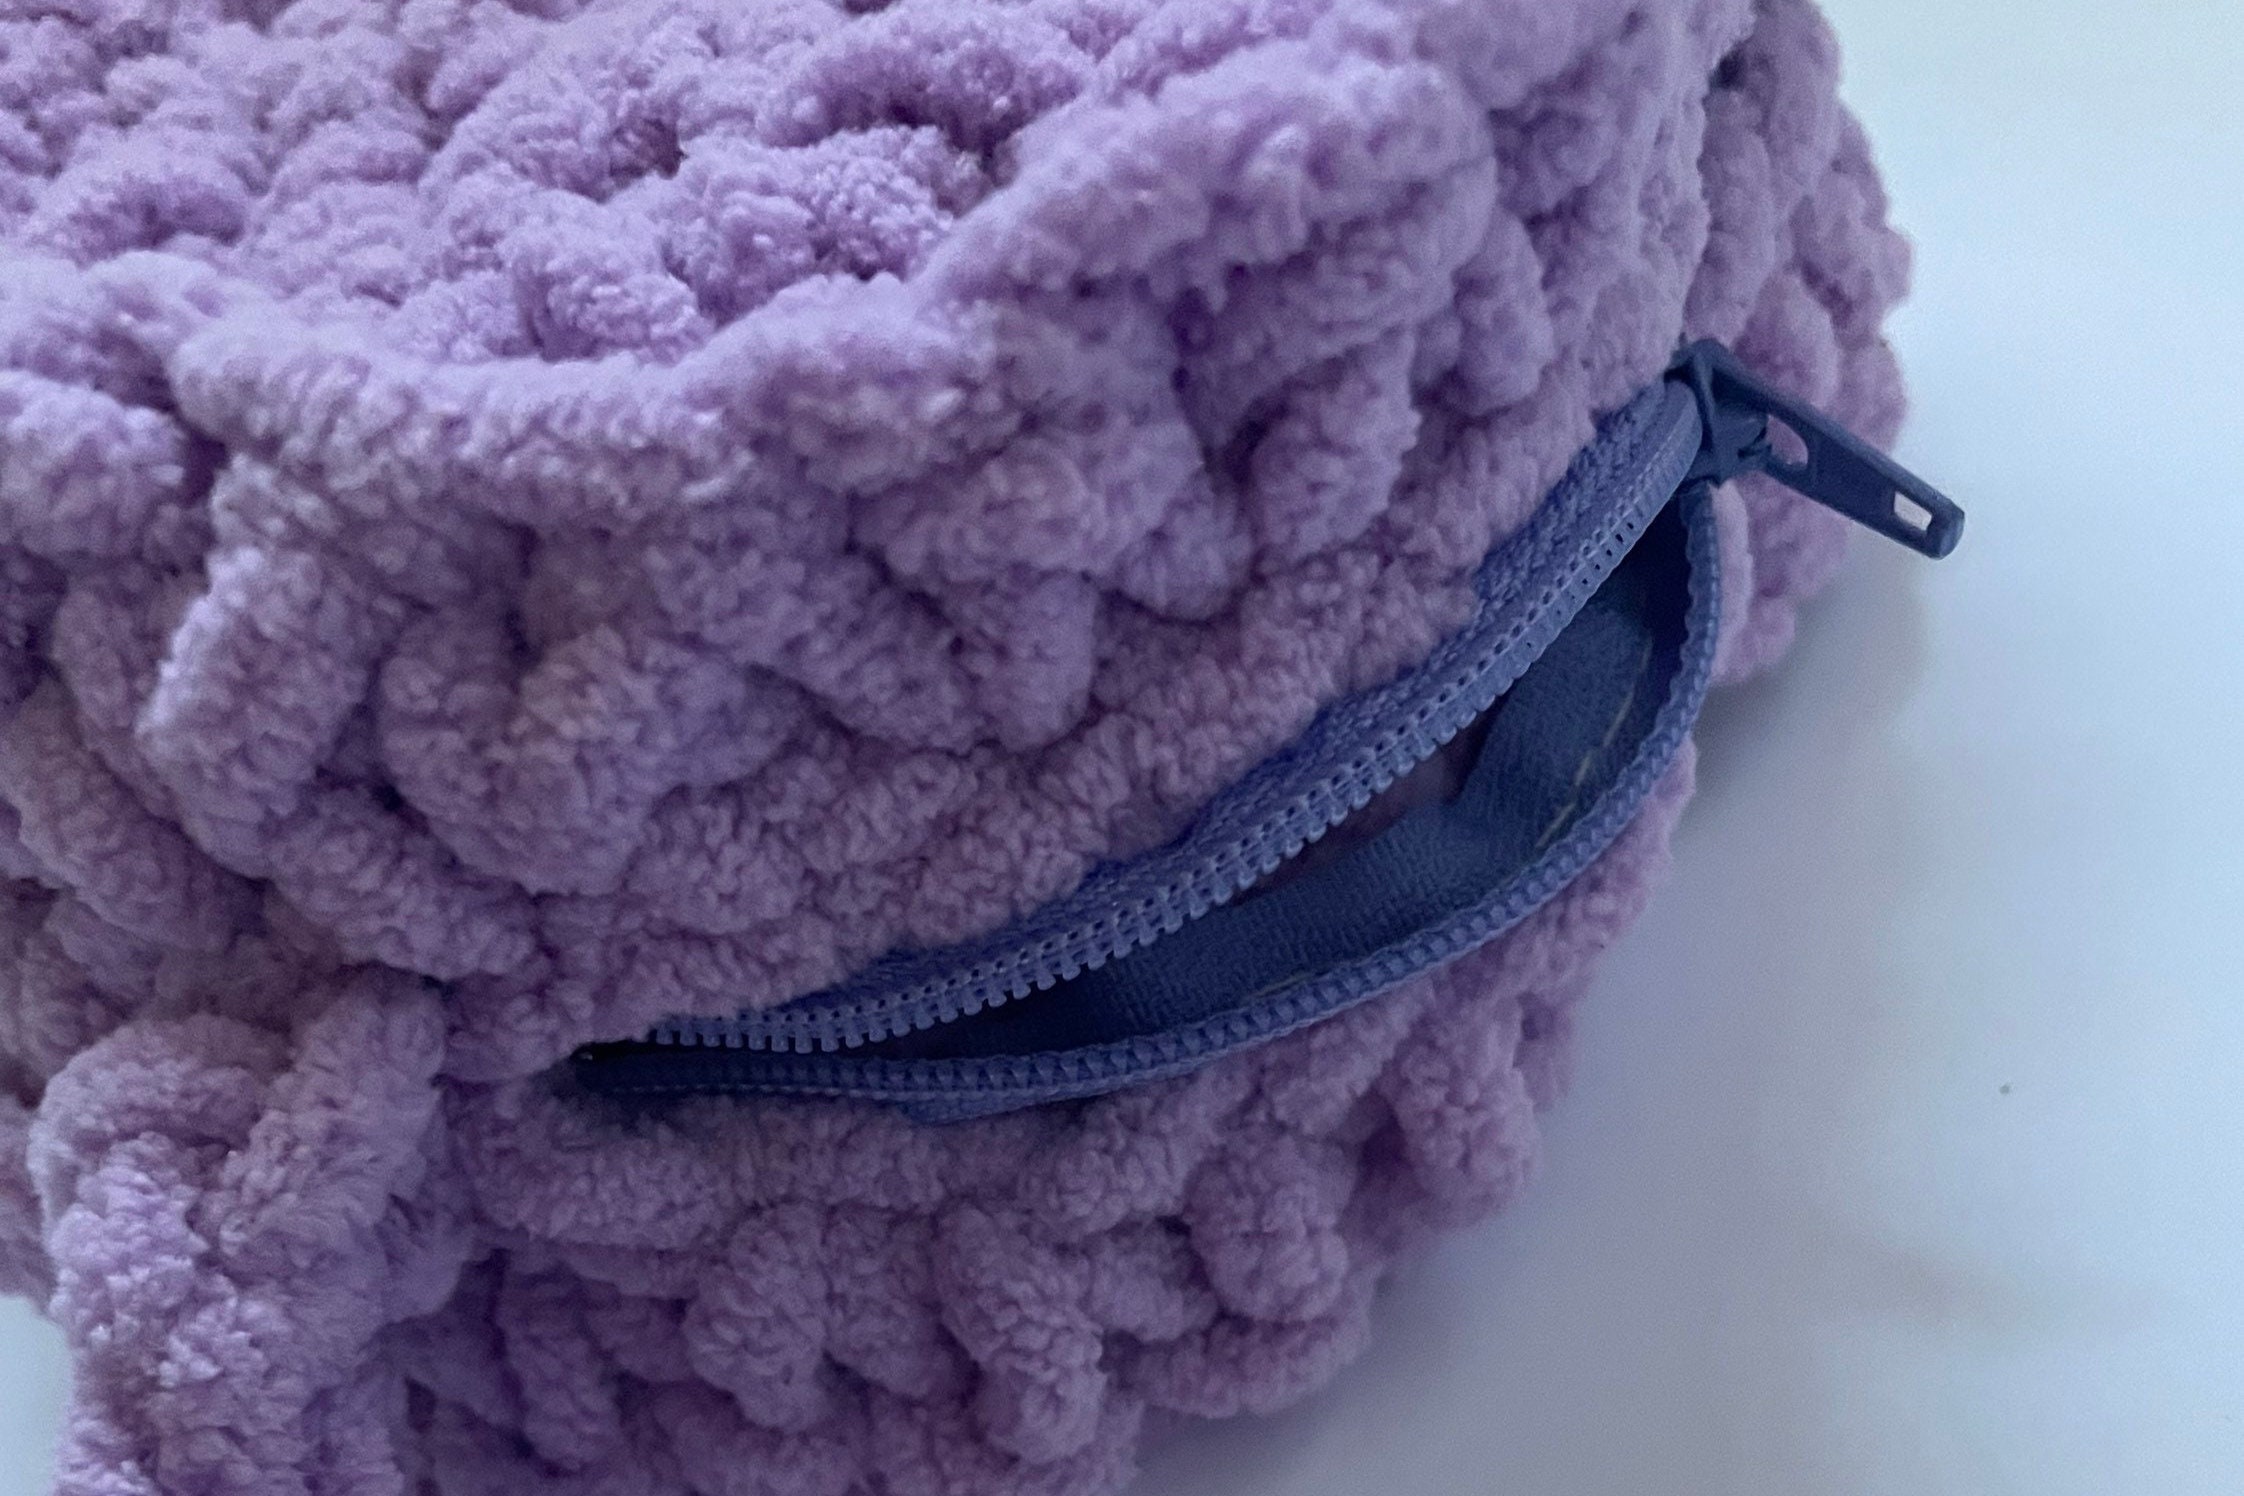 harmtty Women Shoulder Bag Crochet Heart Pattern Large Capacity